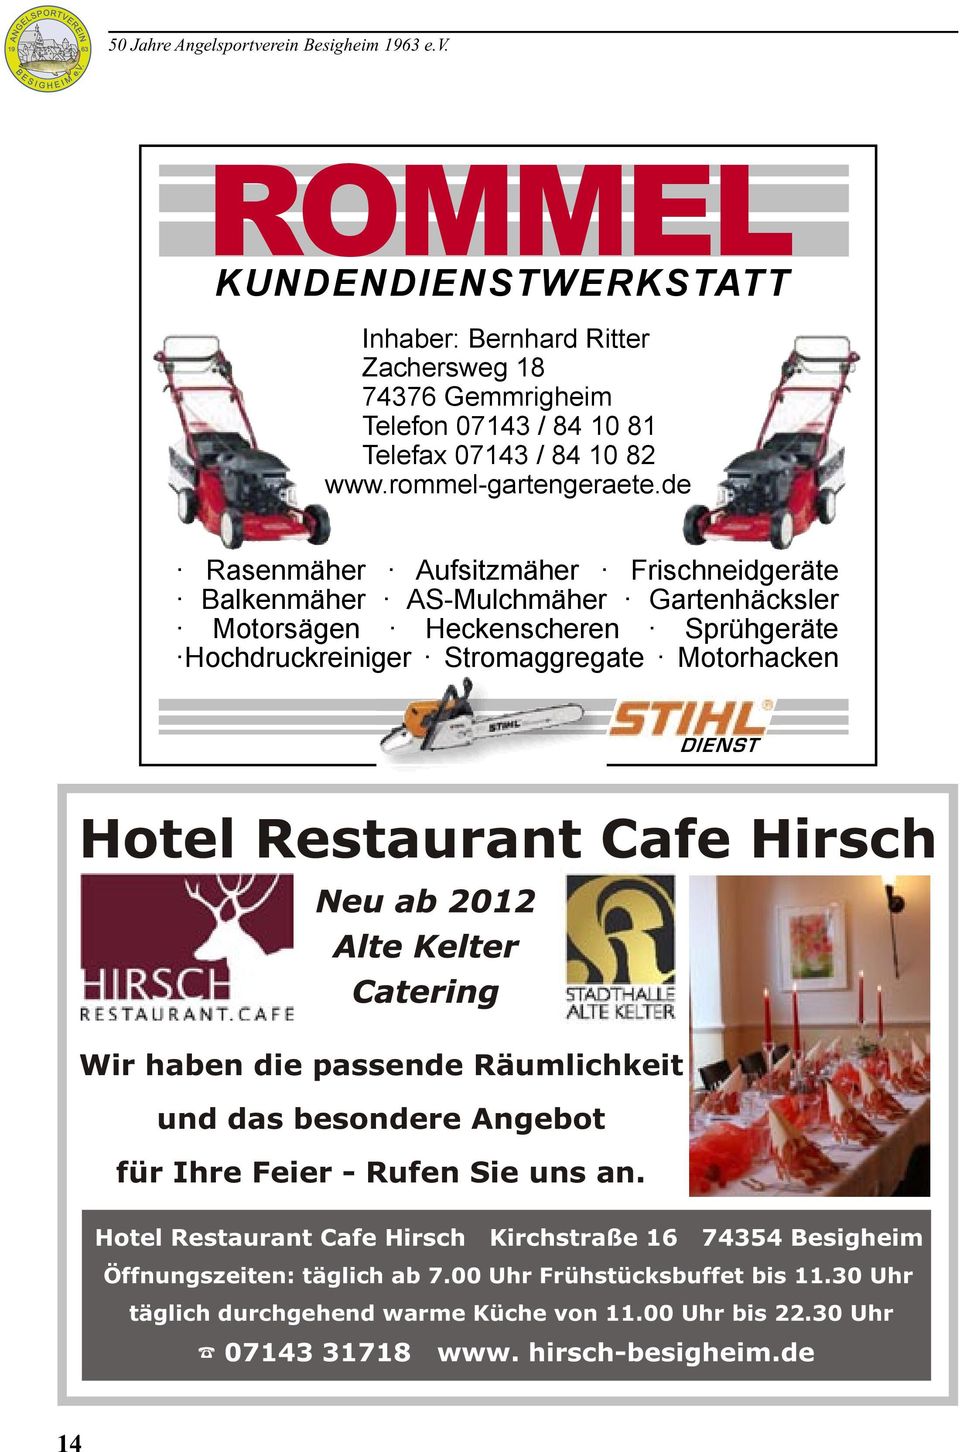 DIENST Hotel Restaurant Cafe Hirsch Wir haben die passende Räumlichkeit und das besondere Angebot für Ihre Feier - Rufen Sie uns an.